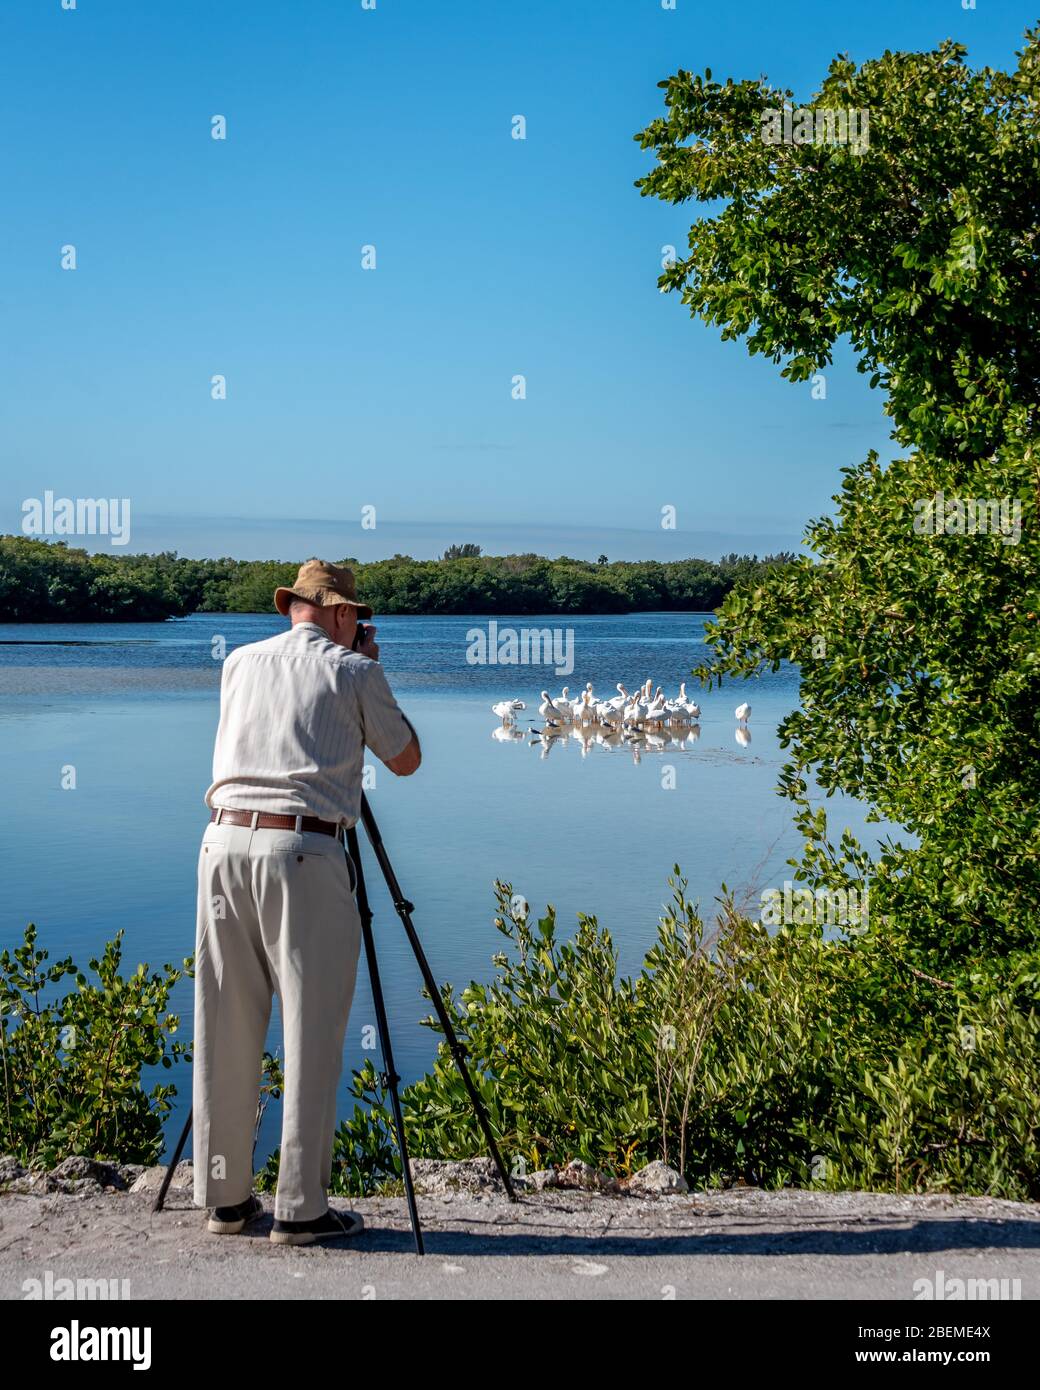 Un turista senior fotografa pellicani bianchi in una vacanza di birdwatching della Florida, durante la visita al Ding Darling Wildlife Refuge sull'isola di Sanibel. Foto Stock